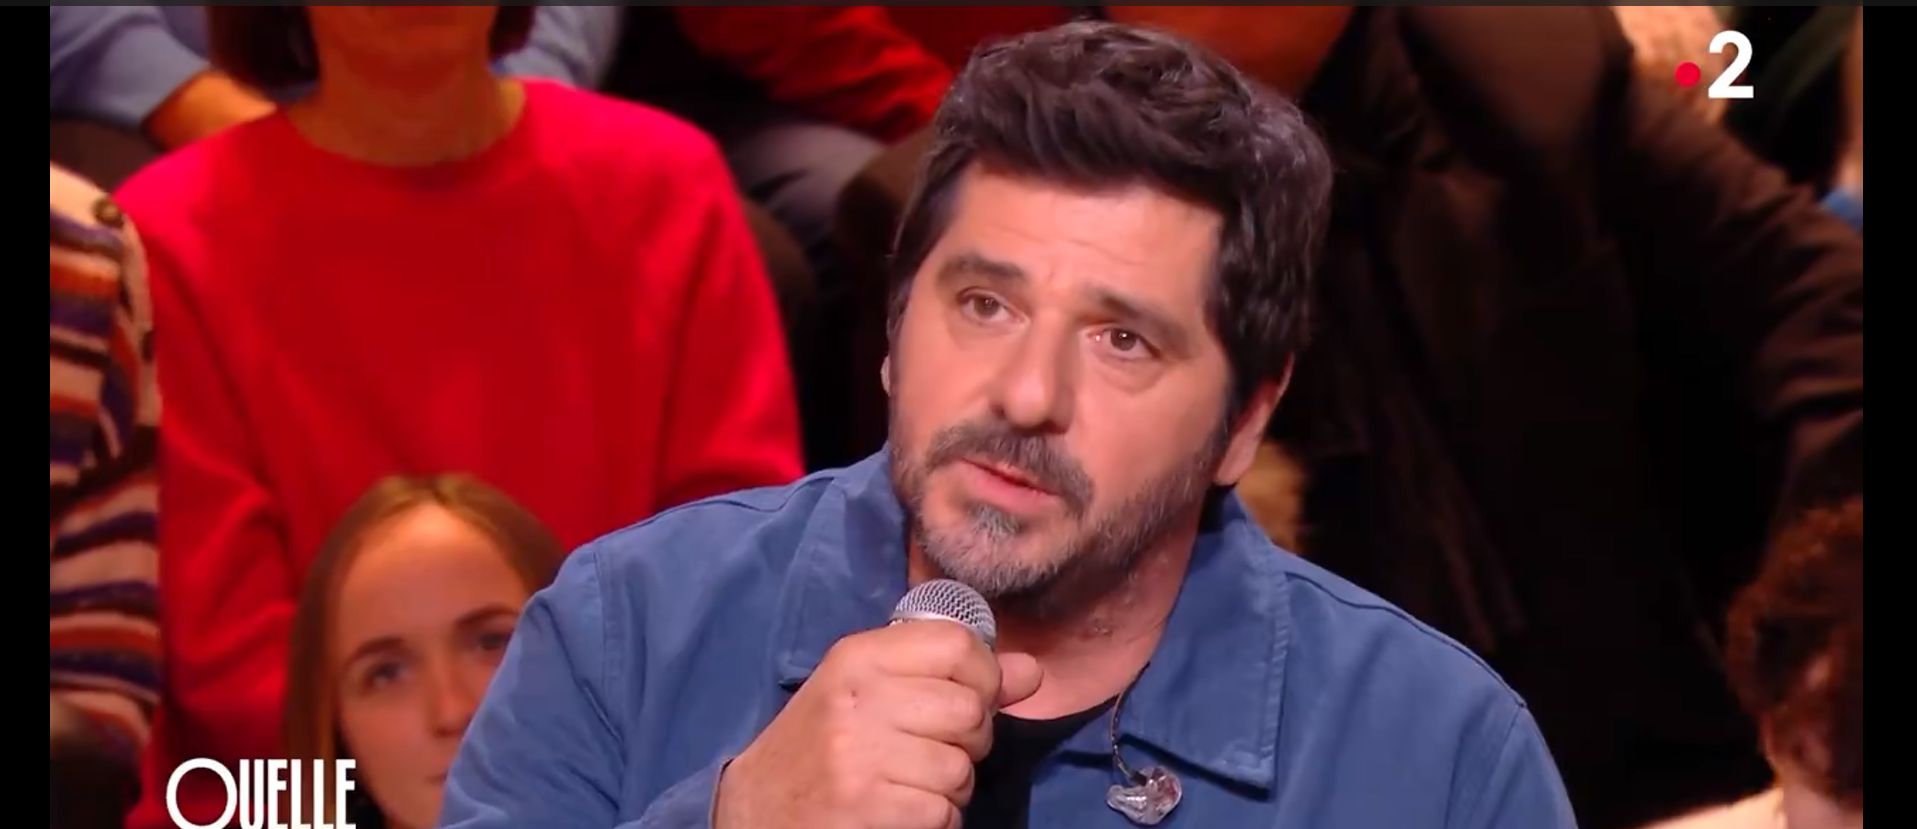 Պատրիկ Ֆիորին France TV-ի եթերում կատարել է «Դլե յաման»-ը (տեսանյութ)